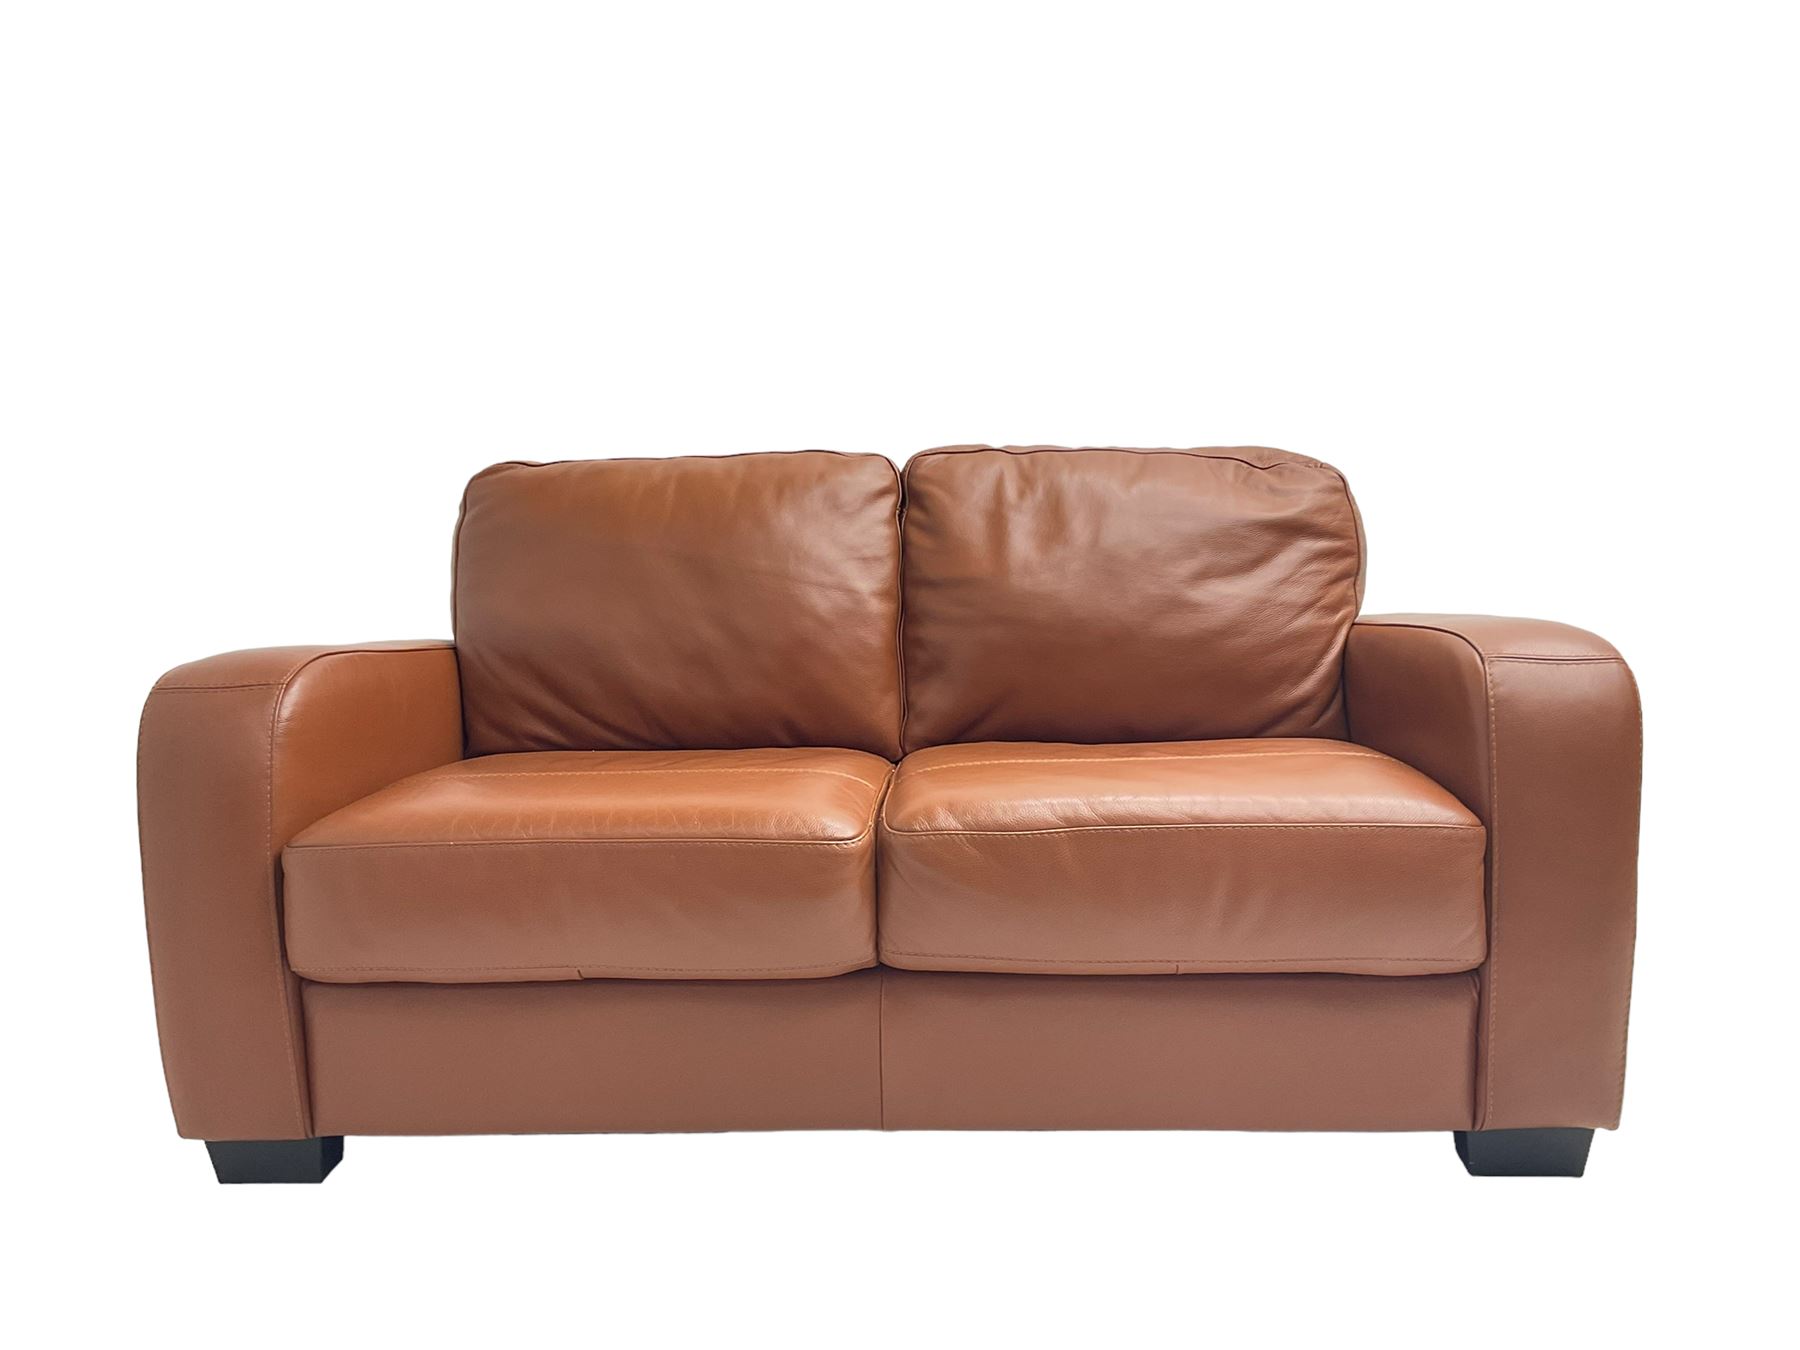 Two seat sofa